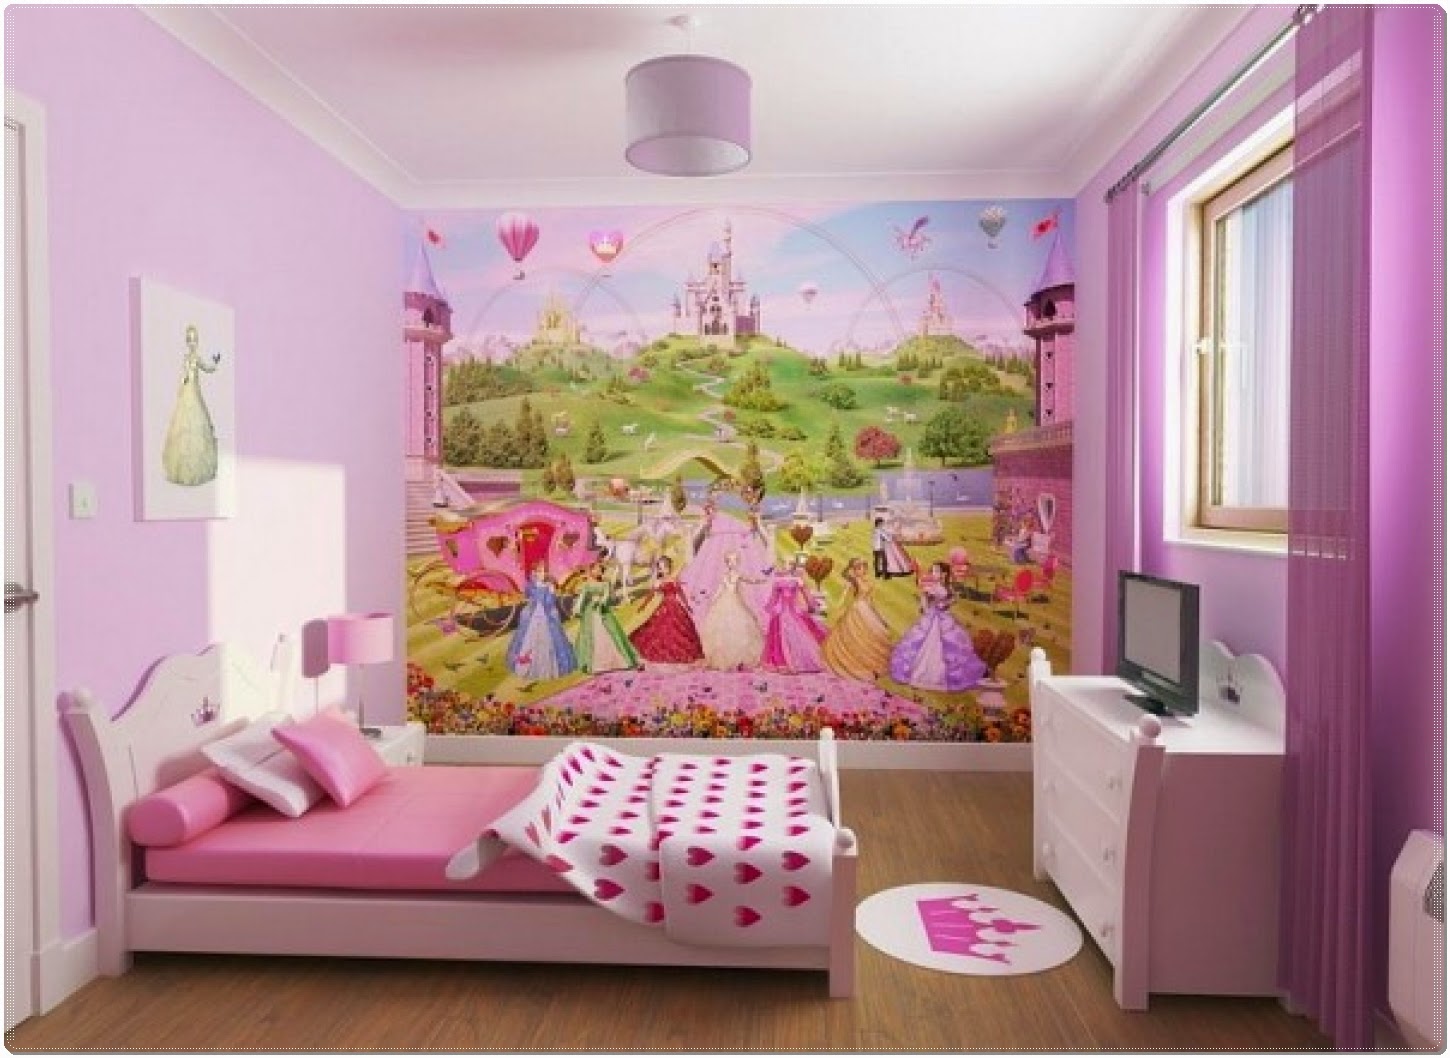 Little Girl Room - 1450x1058 Wallpaper 